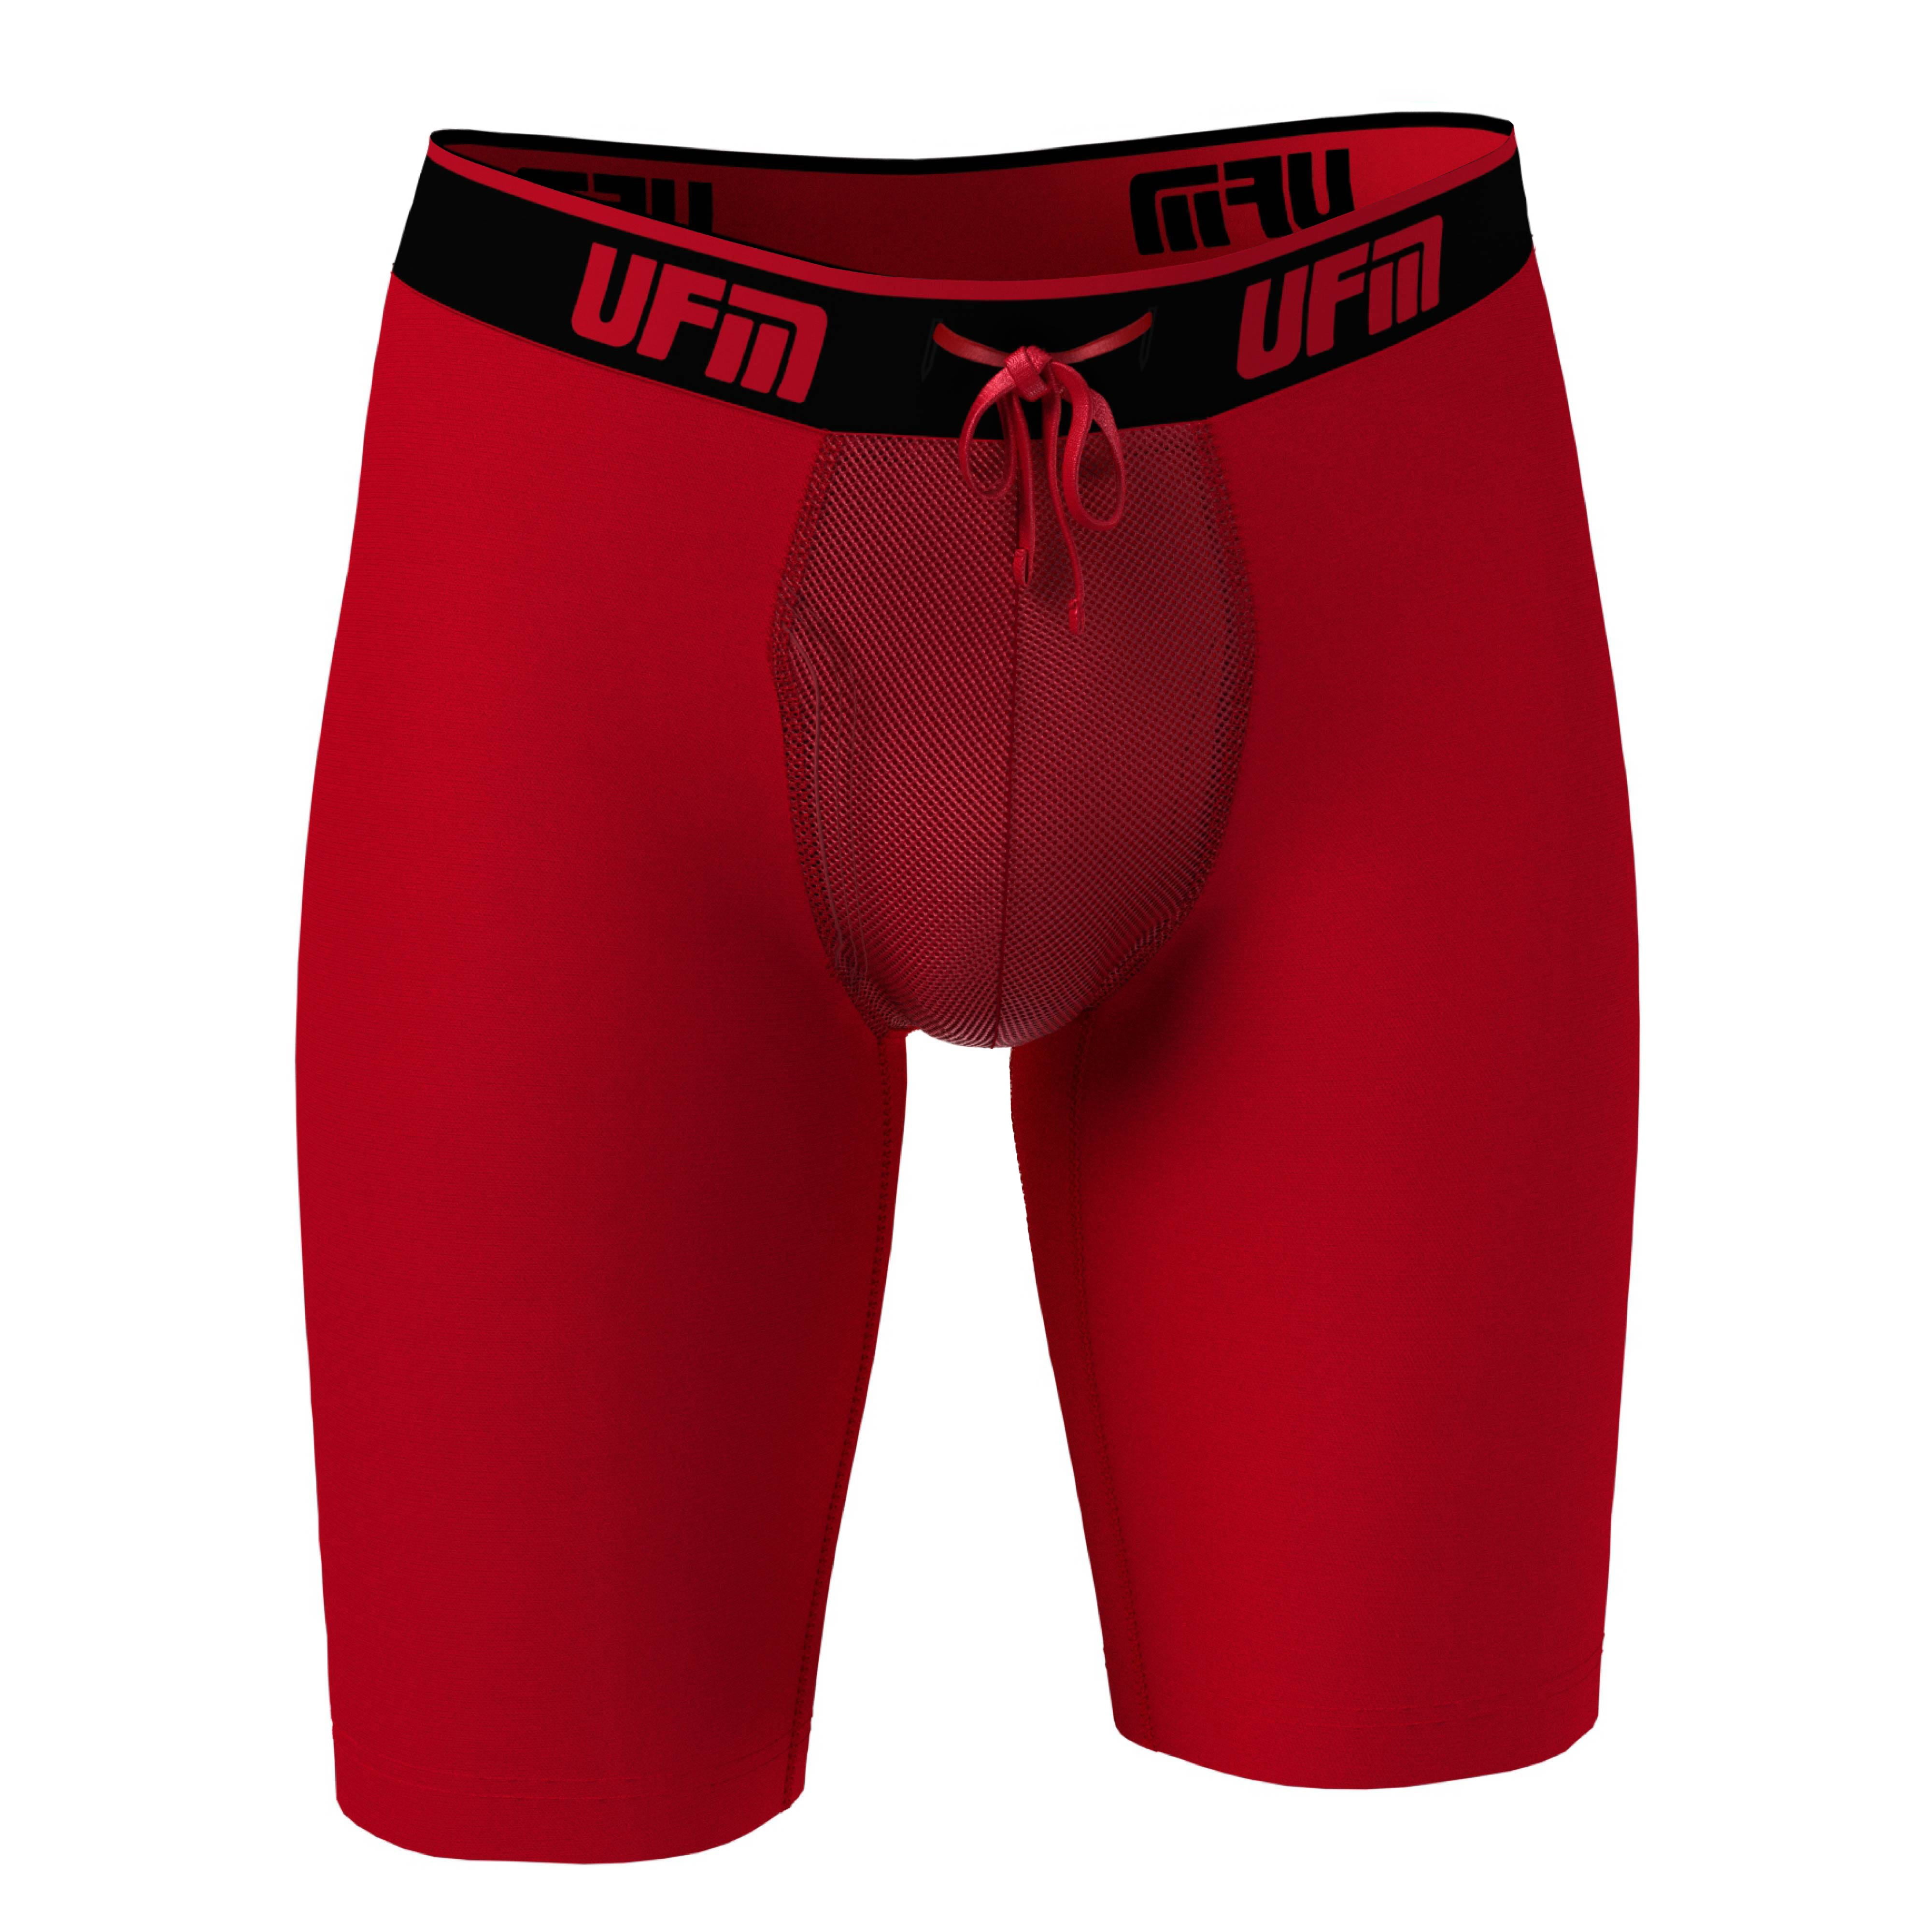 UFM Mens Underwear, 9 Inch Inseam Poly-Spandex Mens Boxer Briefs,  Adjustable REG Support Pouch Mens Boxers, 52-54(4XL) Waist, Red 